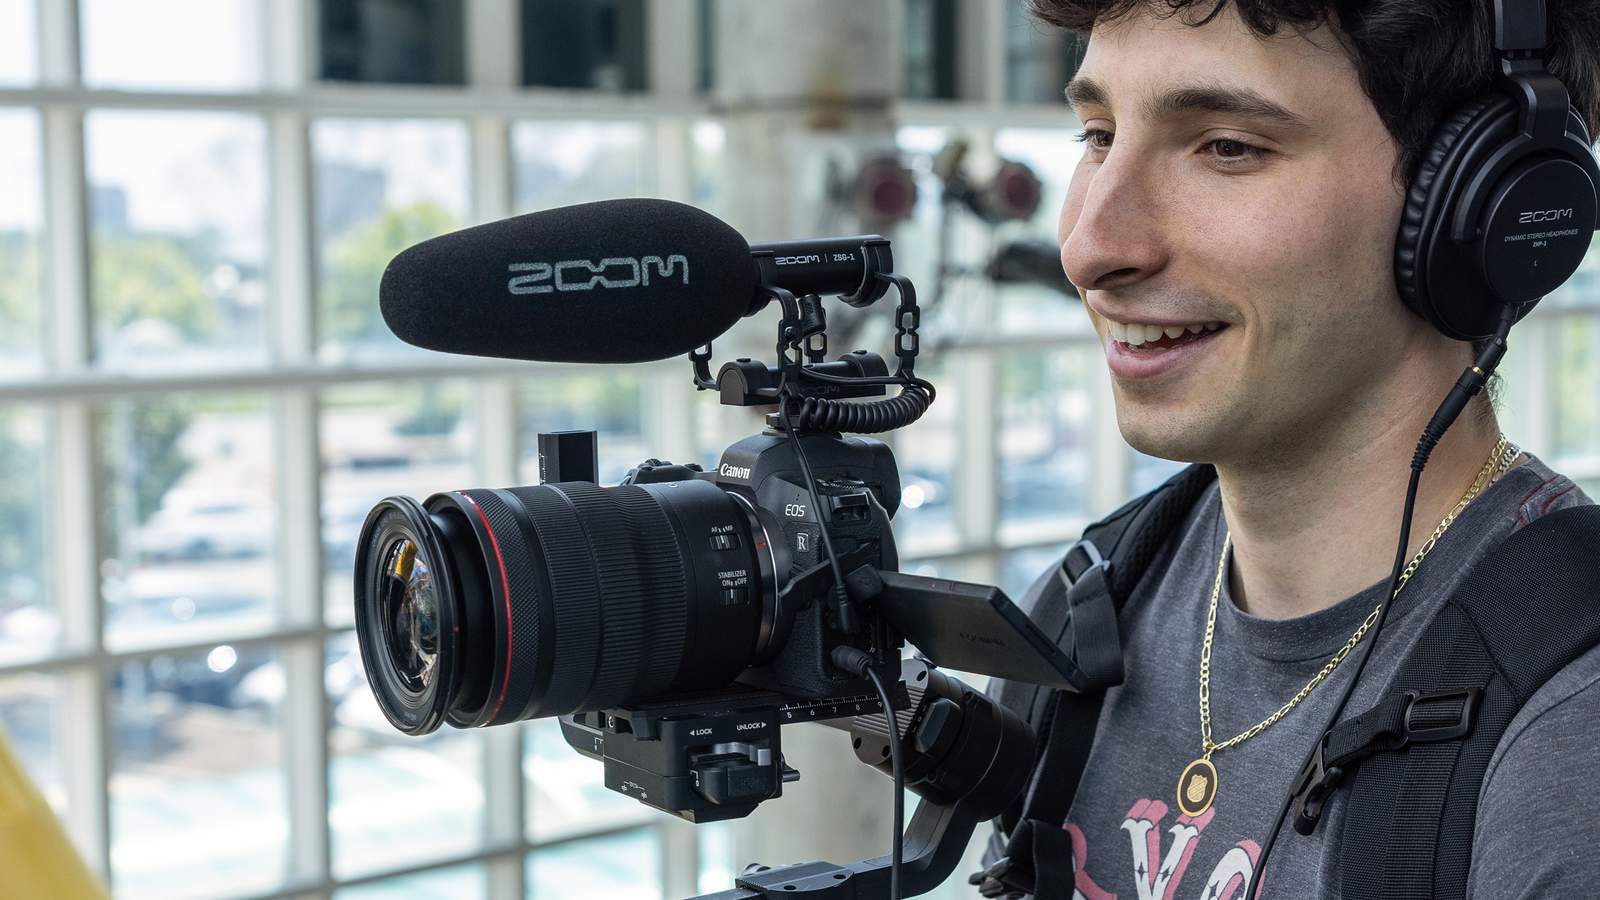 カメラリグにZOOMのオンカメラ・ショットガンマイク『ZSG-1』を取り付けて、動画撮影を行うビデオグラファー